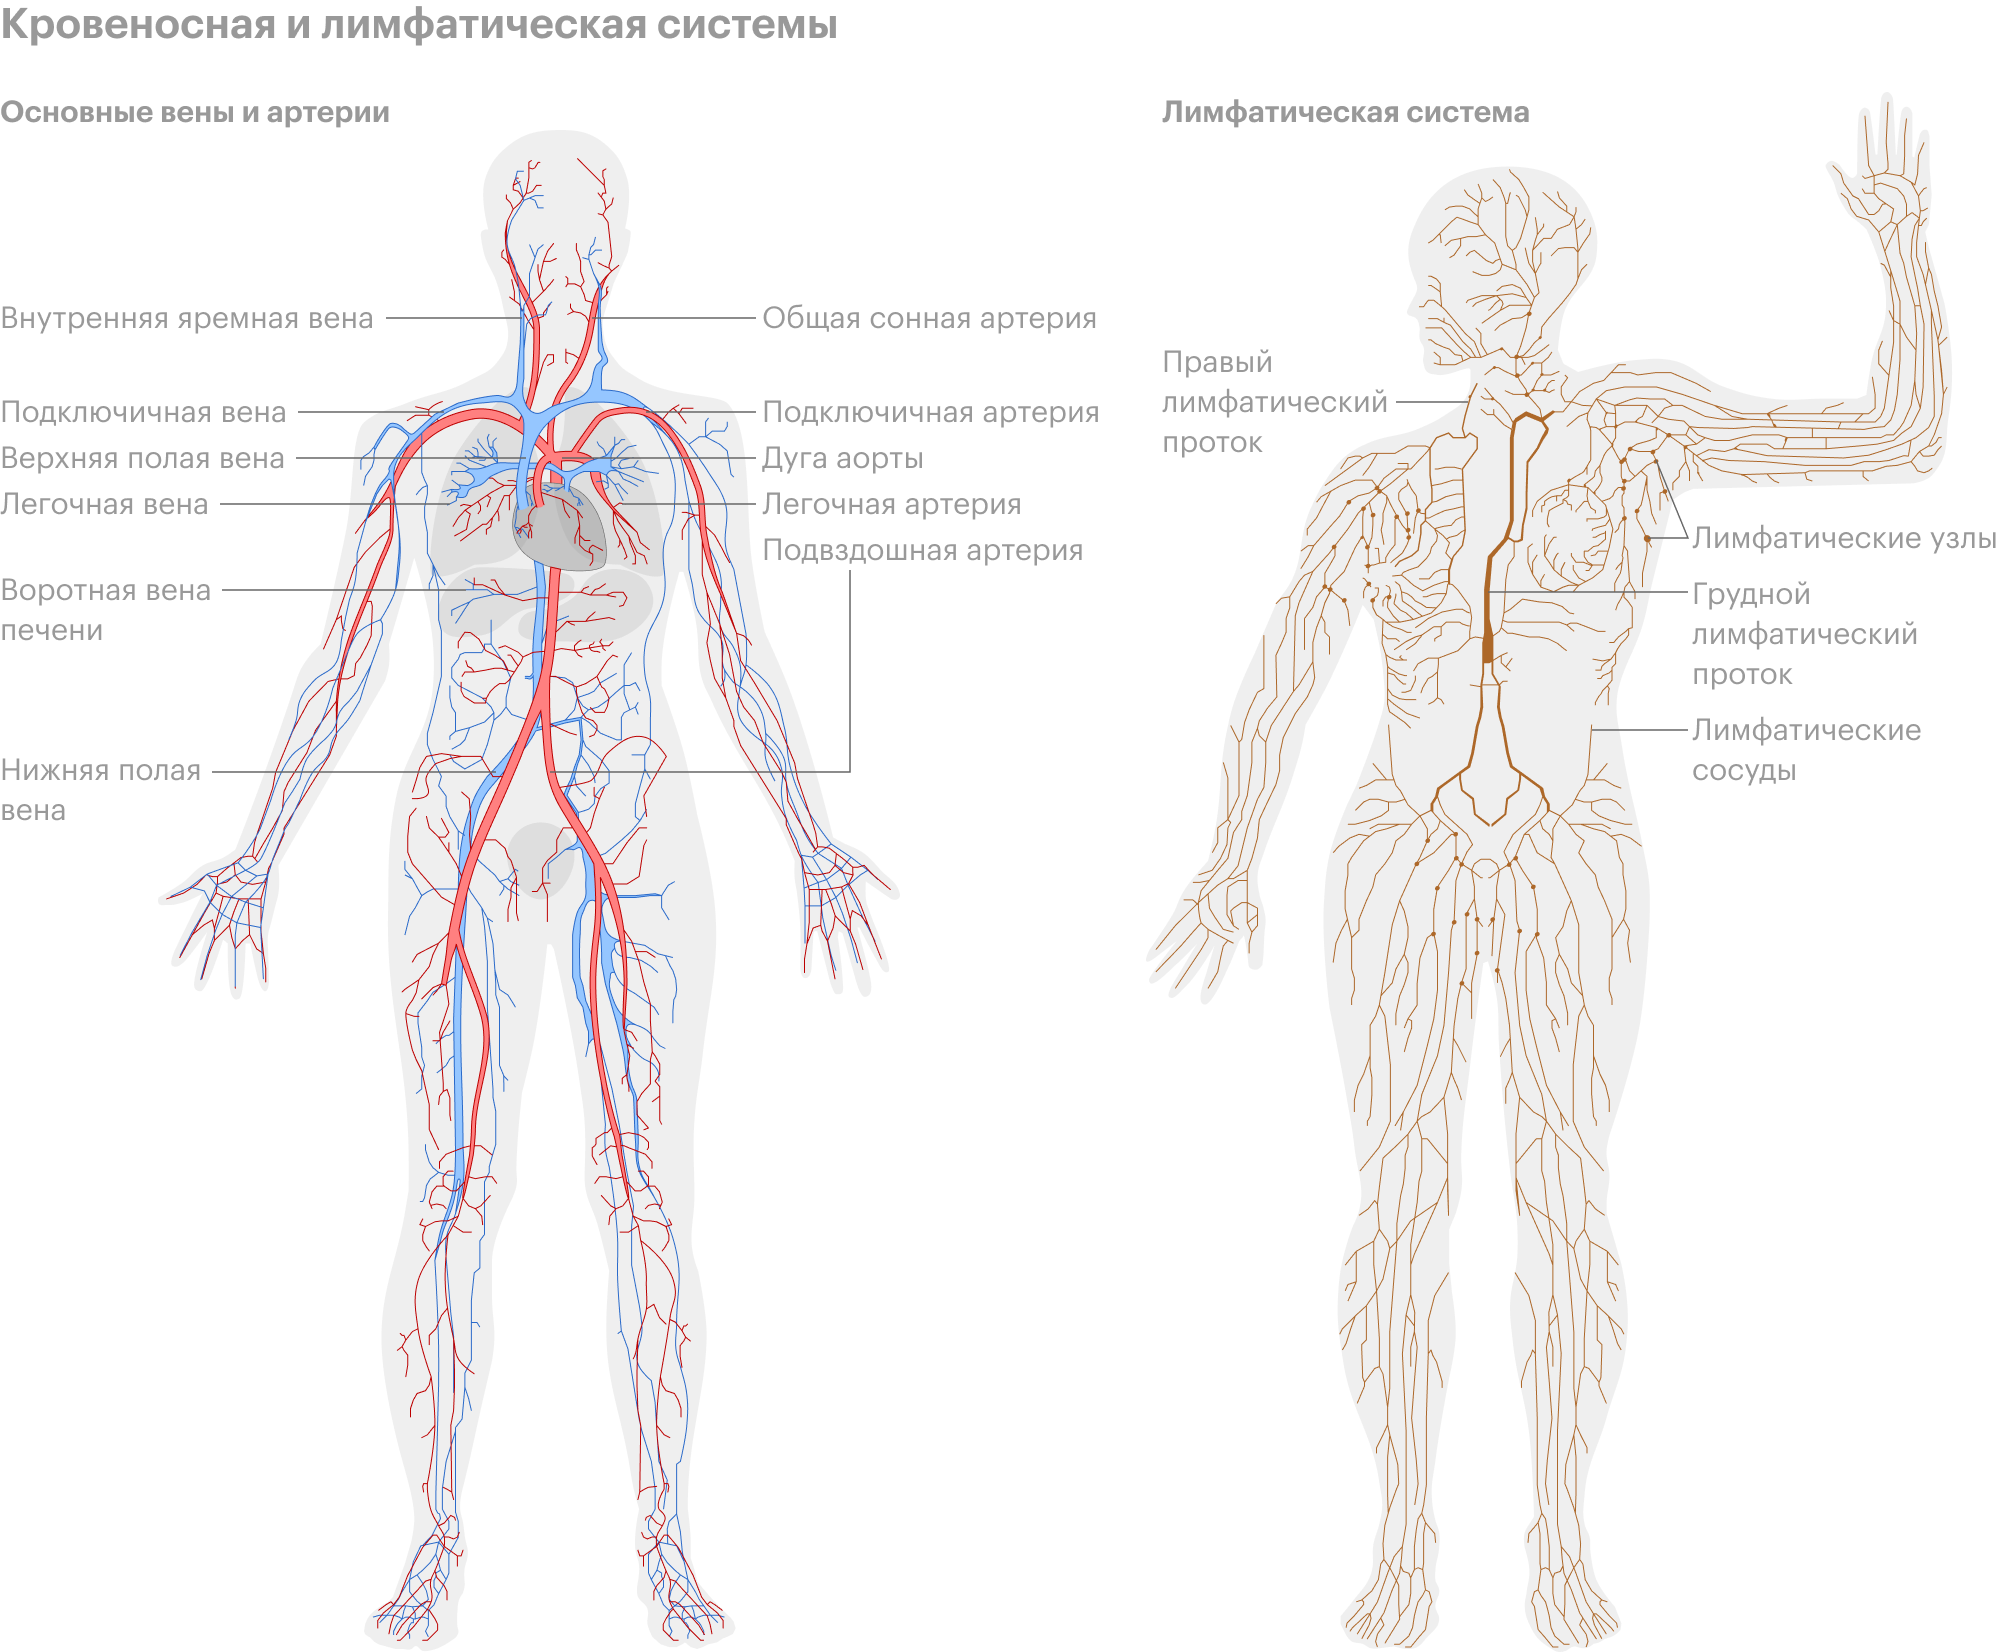 Лимфа включает. Лимфатическая система человека схема. Кровеносная и лимфатическая система человека схема. Лимфосистема человека схема движения лимфы. Лимфатическая система человека рисунок.